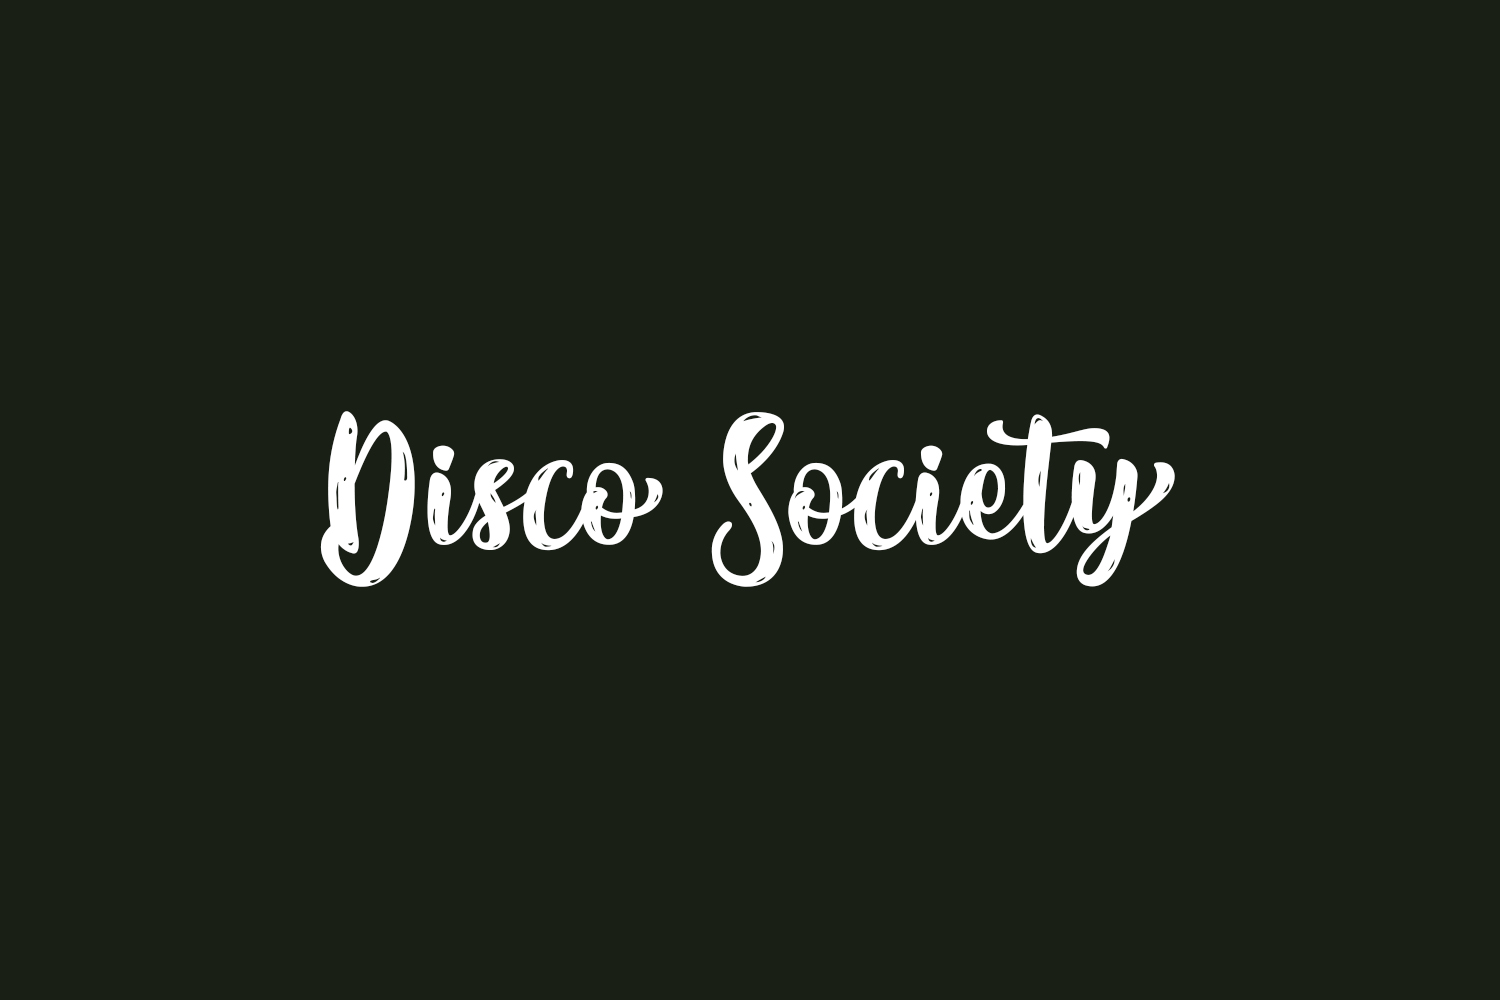 Disco Society Free Font